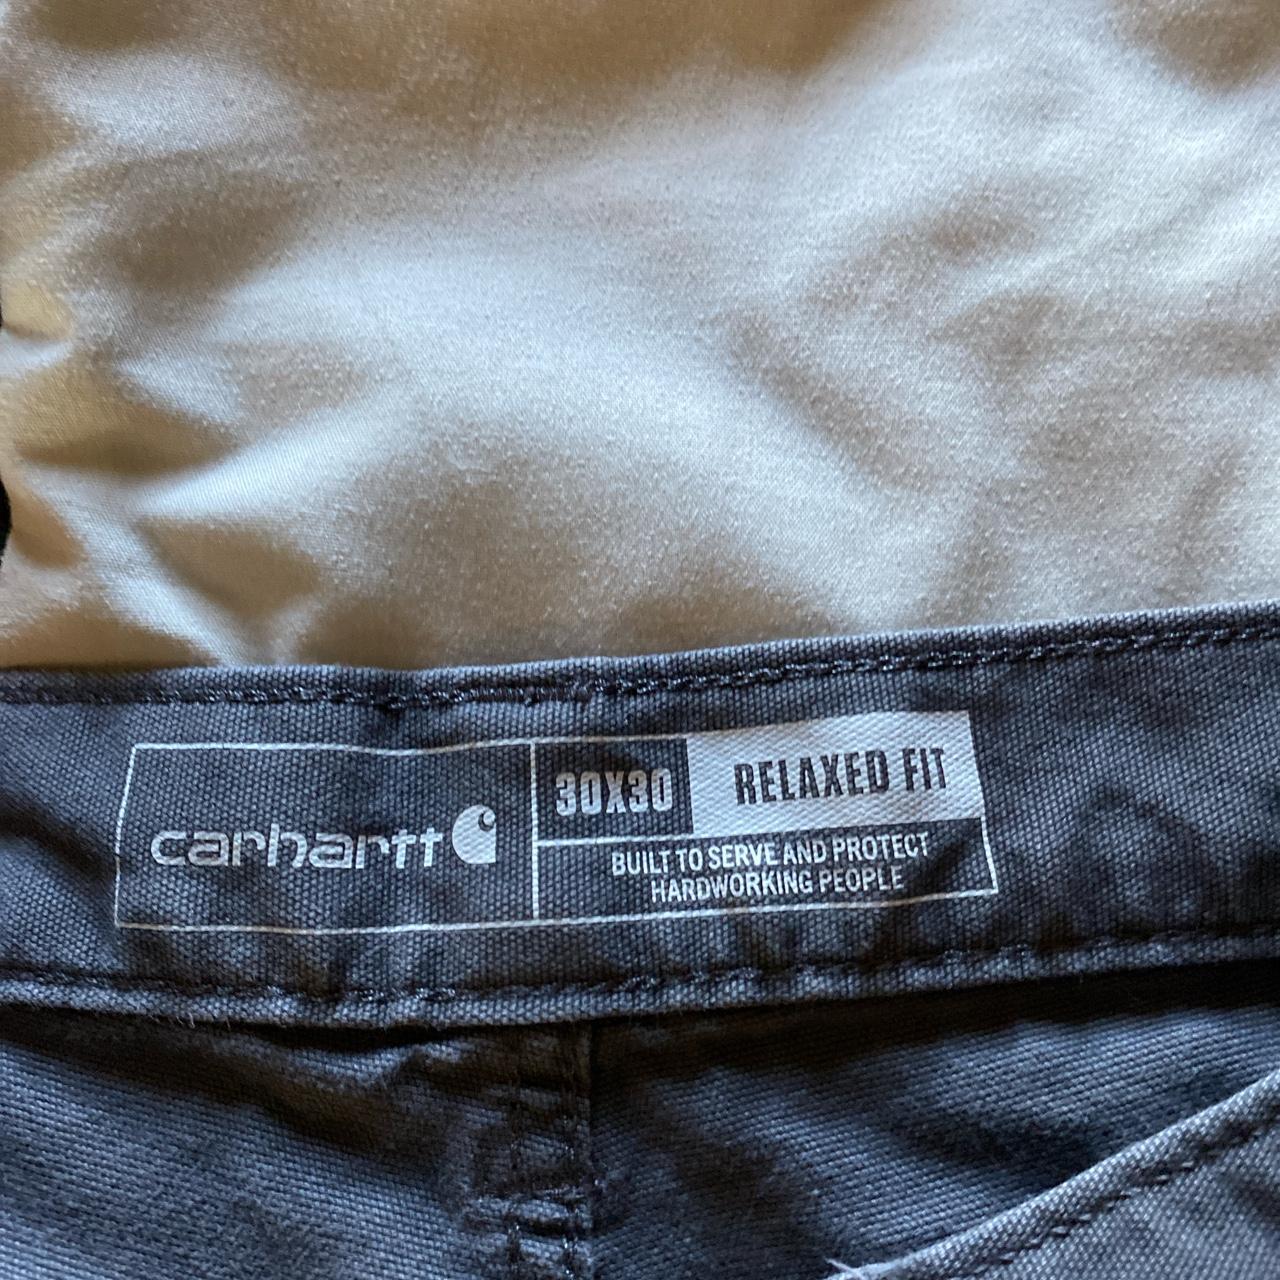 Relaxed fit 30x30 carhartt pants #carhartt #pants... - Depop